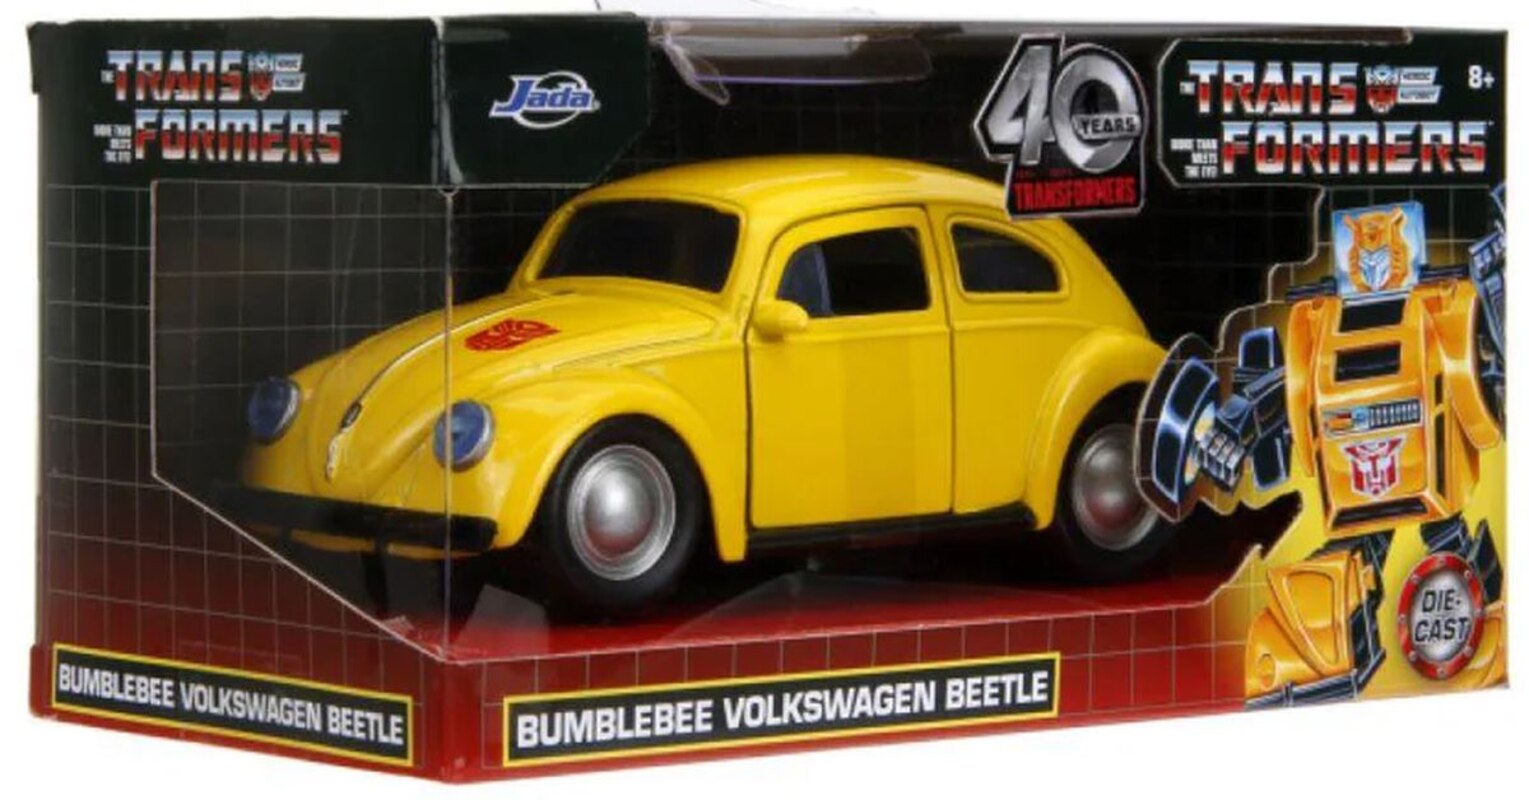 Véhicule moulé sous pression G1 Bumblebee VW Beetle à l’échelle 1:32 Images officielles de Jada Transformers